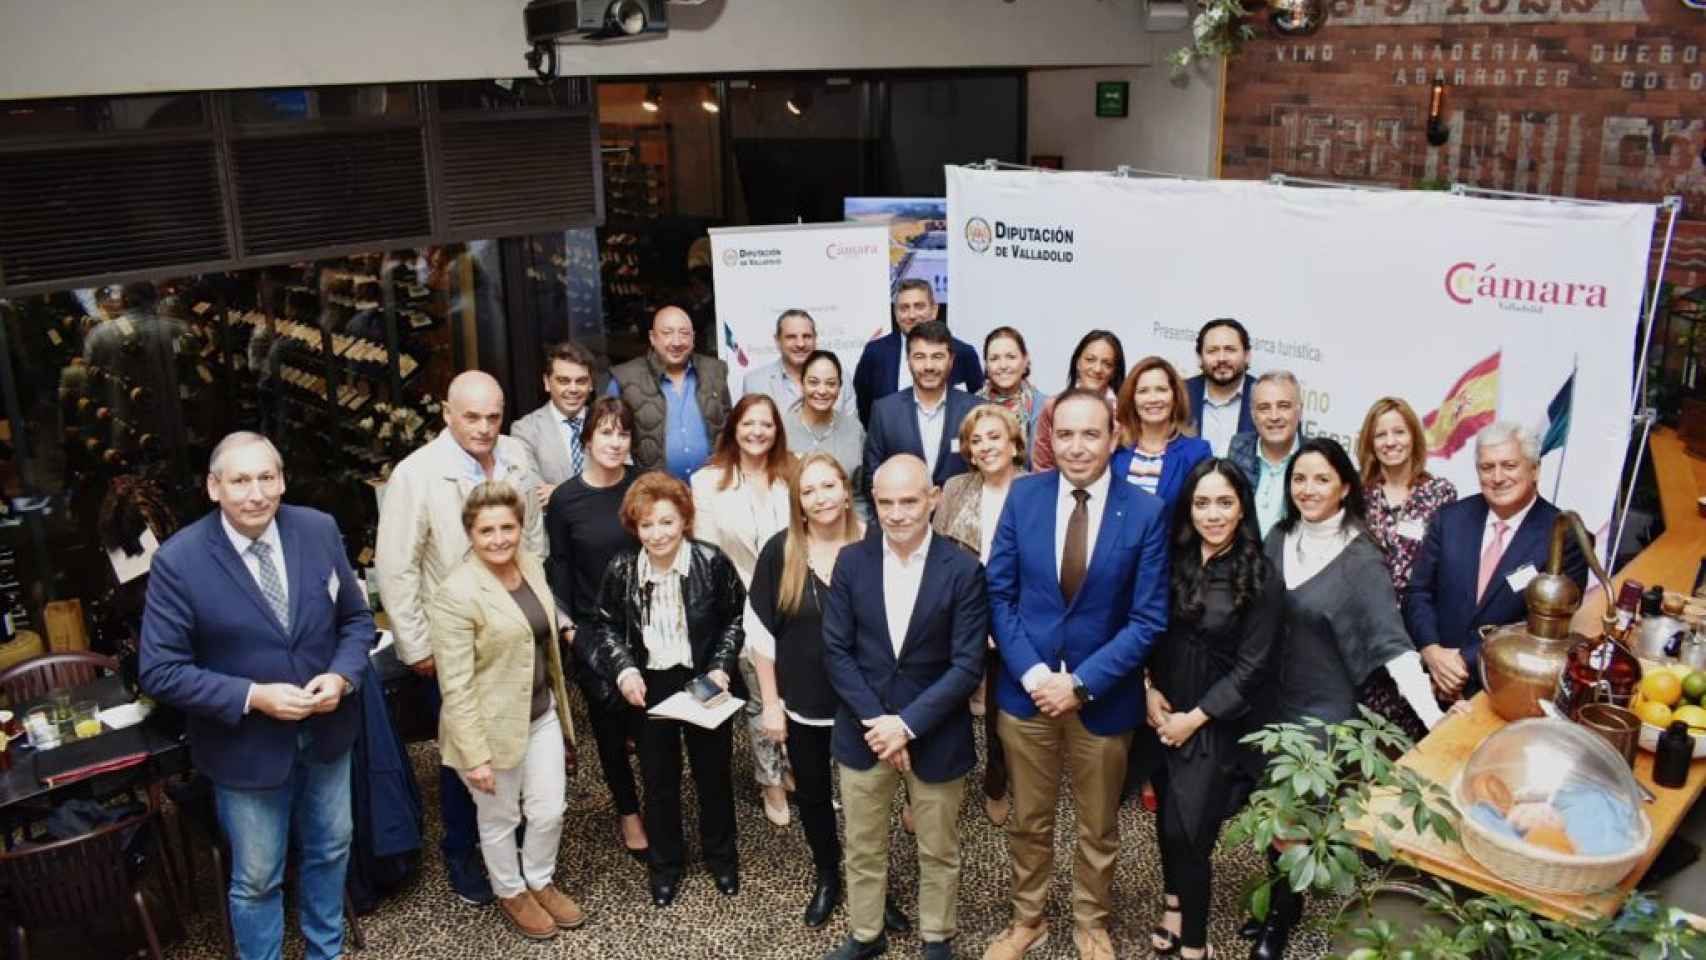 La delegación provincial de Valladolid estrecha lazos sobre el enoturismo de calidad en Ciudad de México